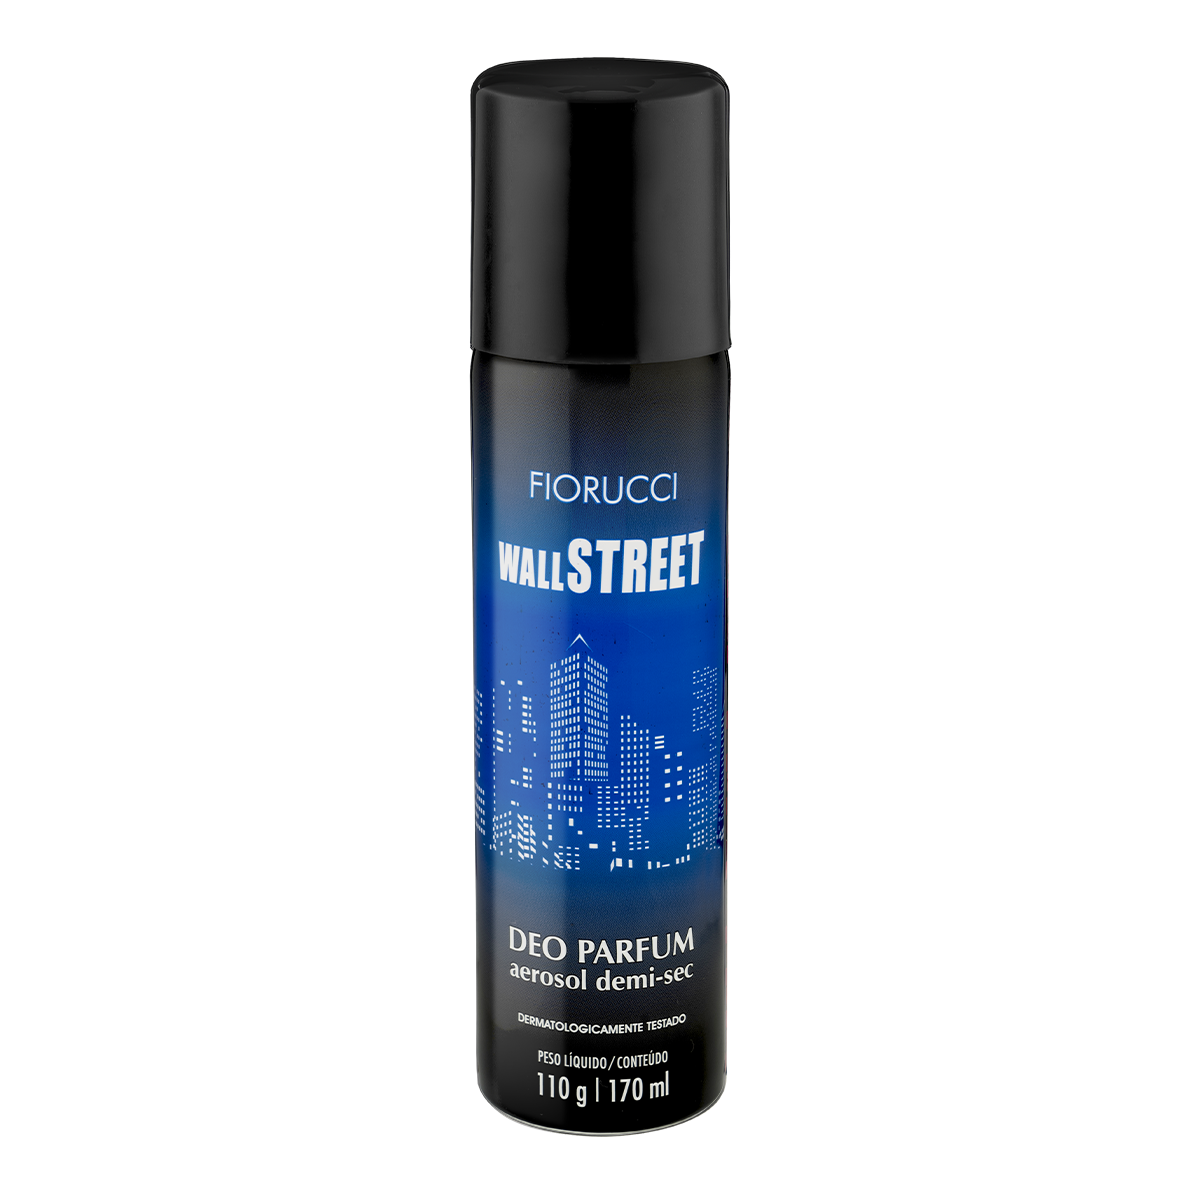 Fiorucci - Desodorante Aerosol - Wall Street - 170 ml